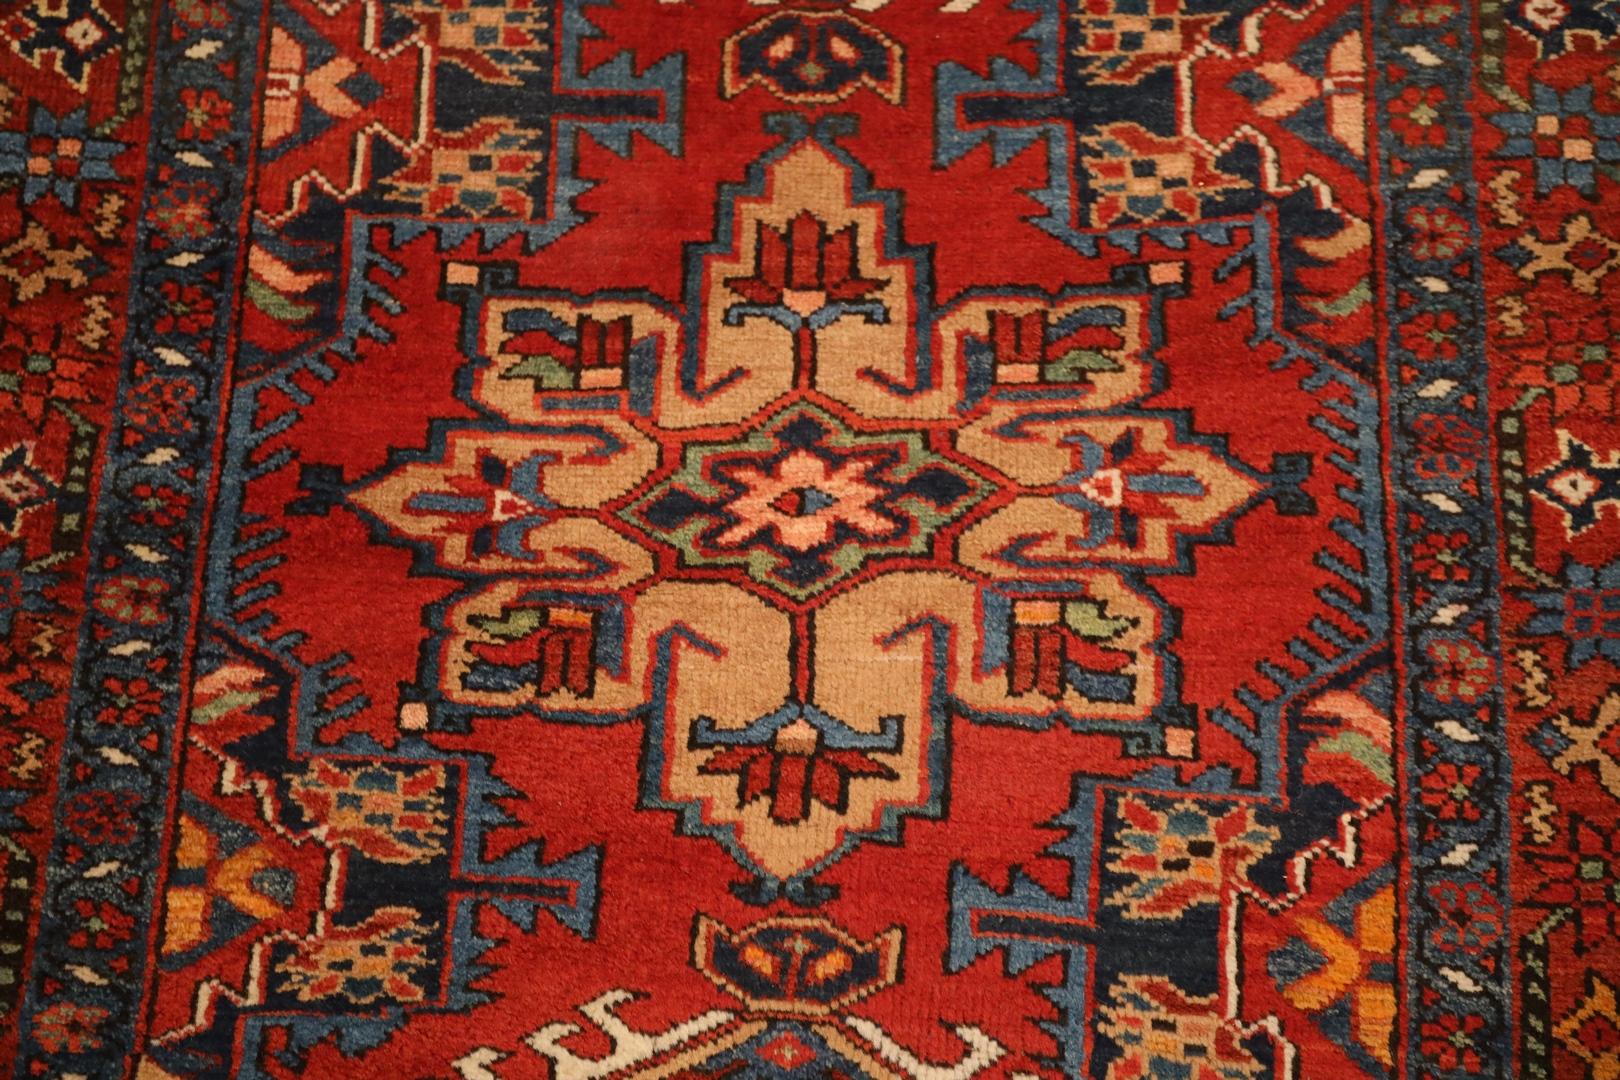 N.W. Persischer halb antiker Teppich, rot-beige, Meeresgrün, 3'2